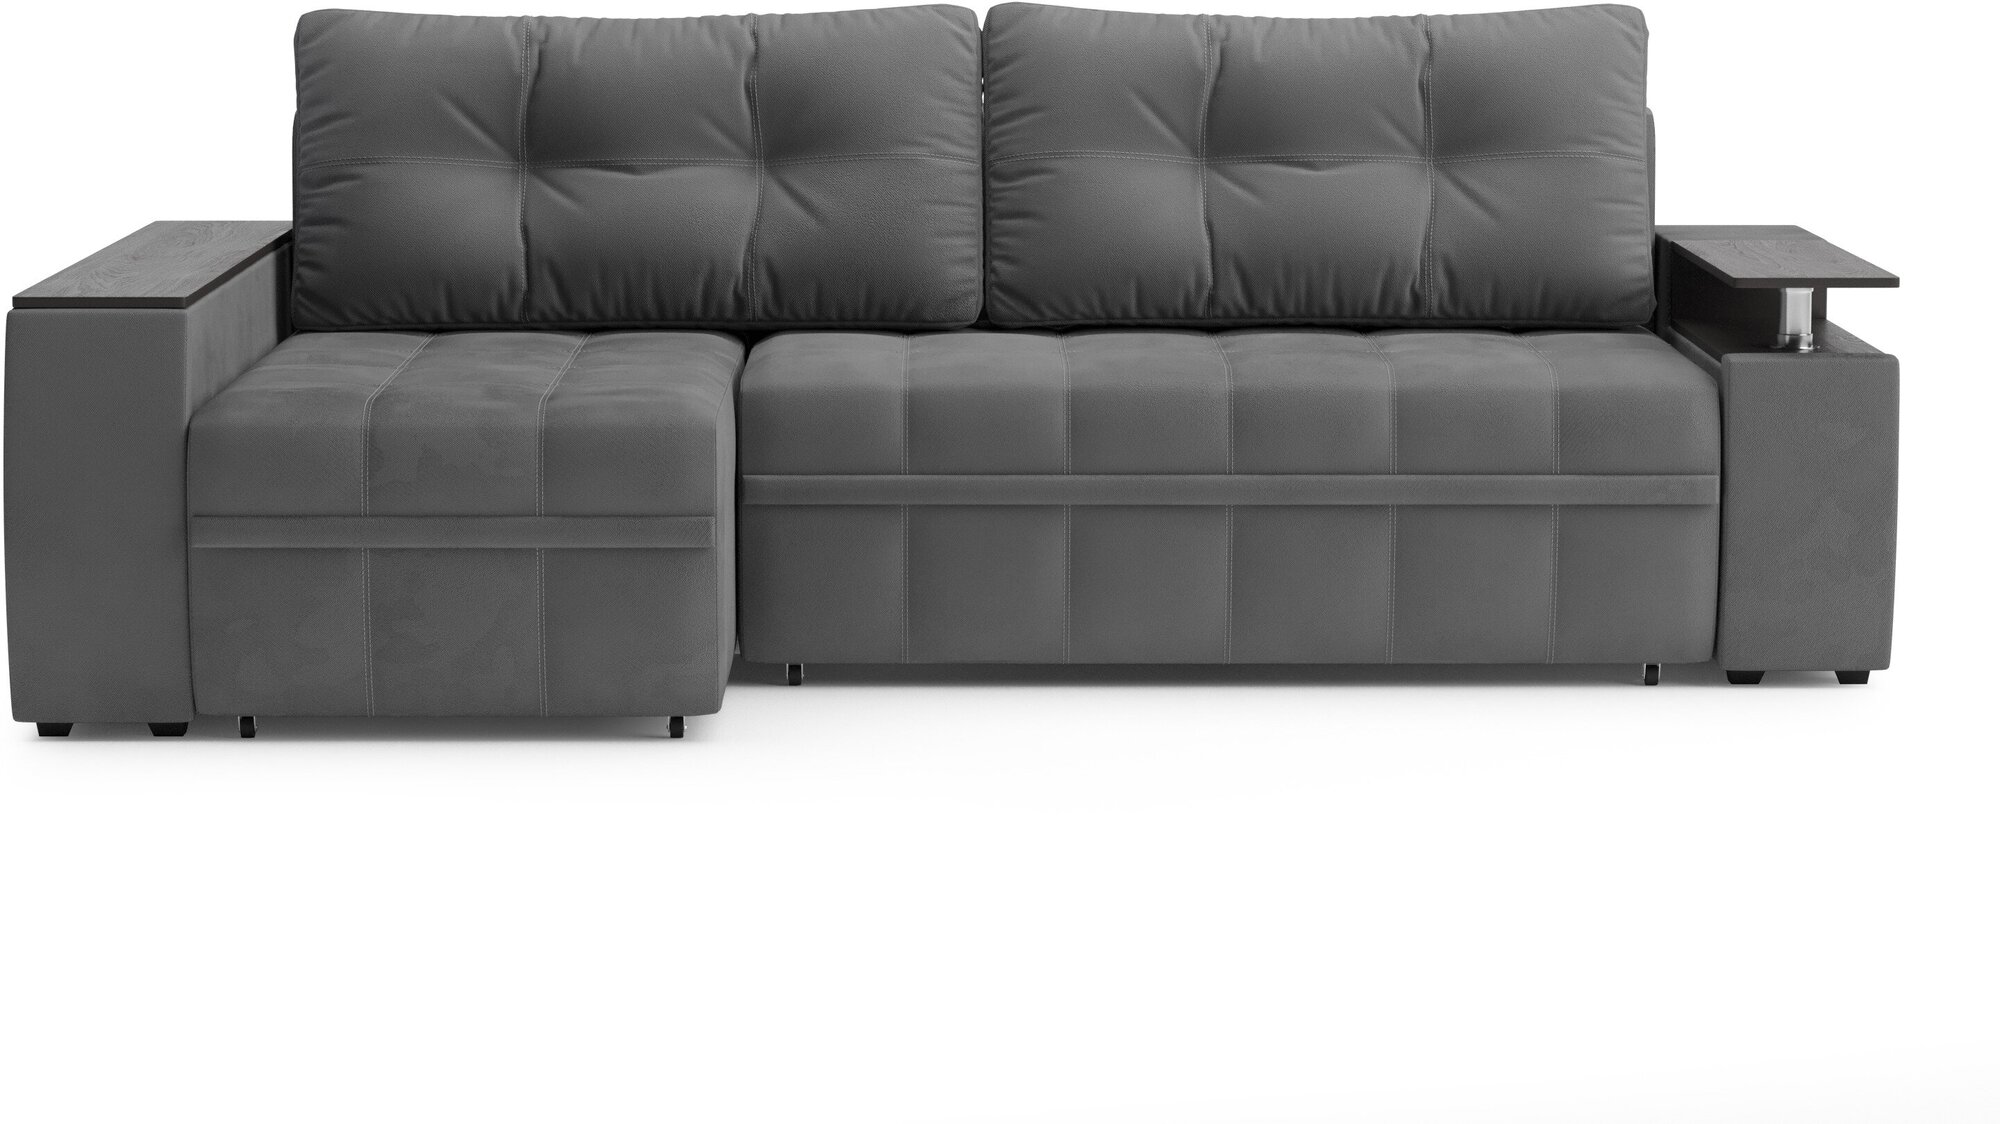 Диван угол Мустанг с утяжкой / еврокнижка /диван кровать/диван прямой/диван для сна/диван раскладной